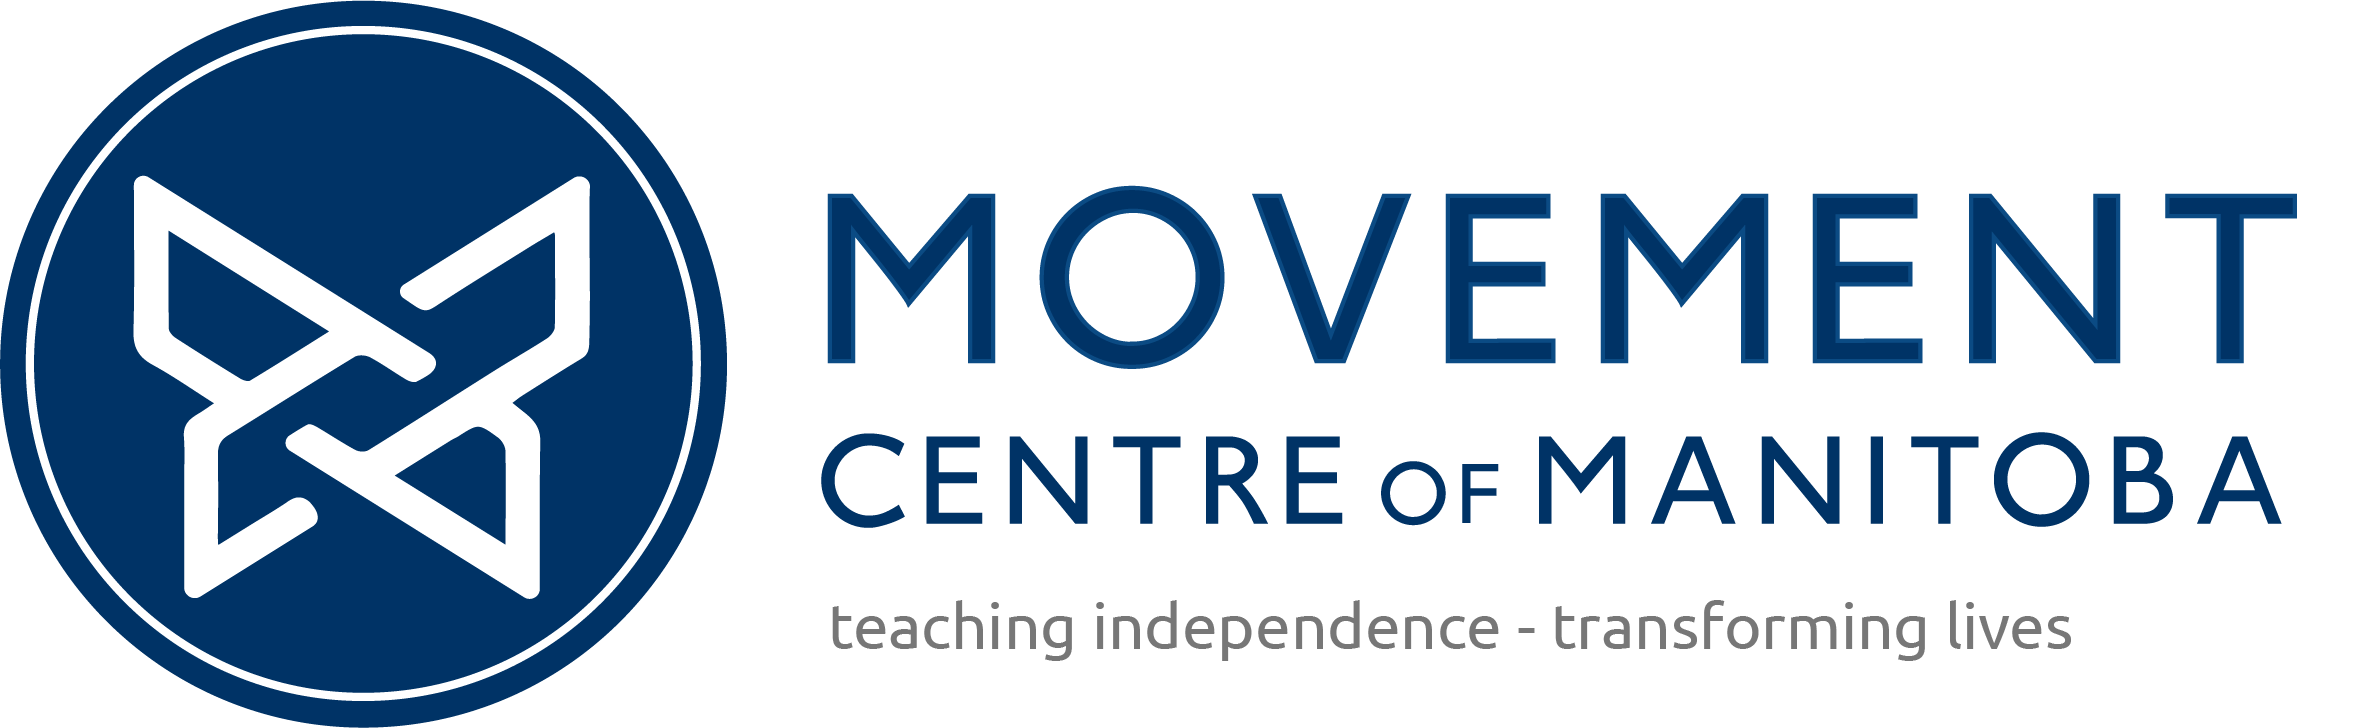 Movement Centre of Manitoba logo